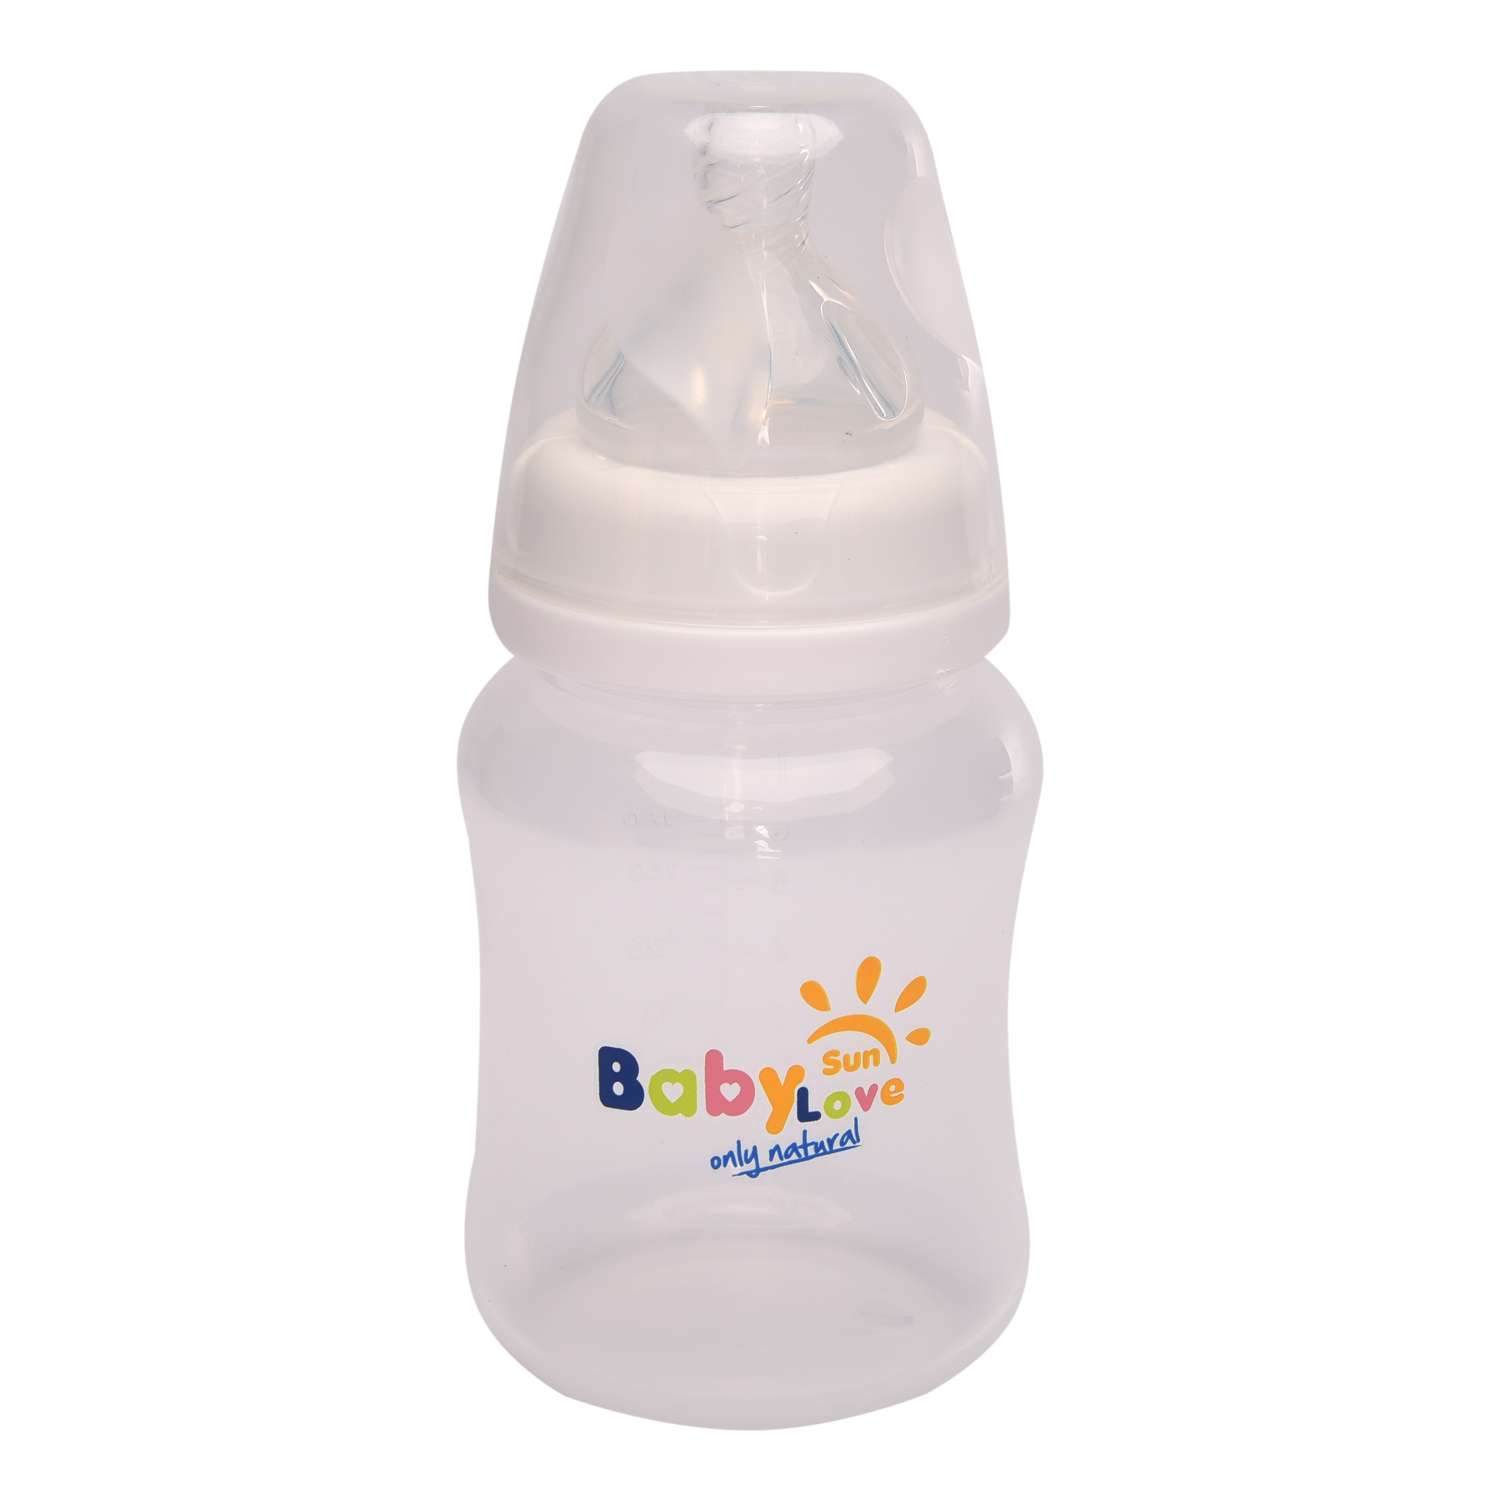 Бутылочка Baby Sun Care 210 мл с силиконовой соской средний поток - фото 1